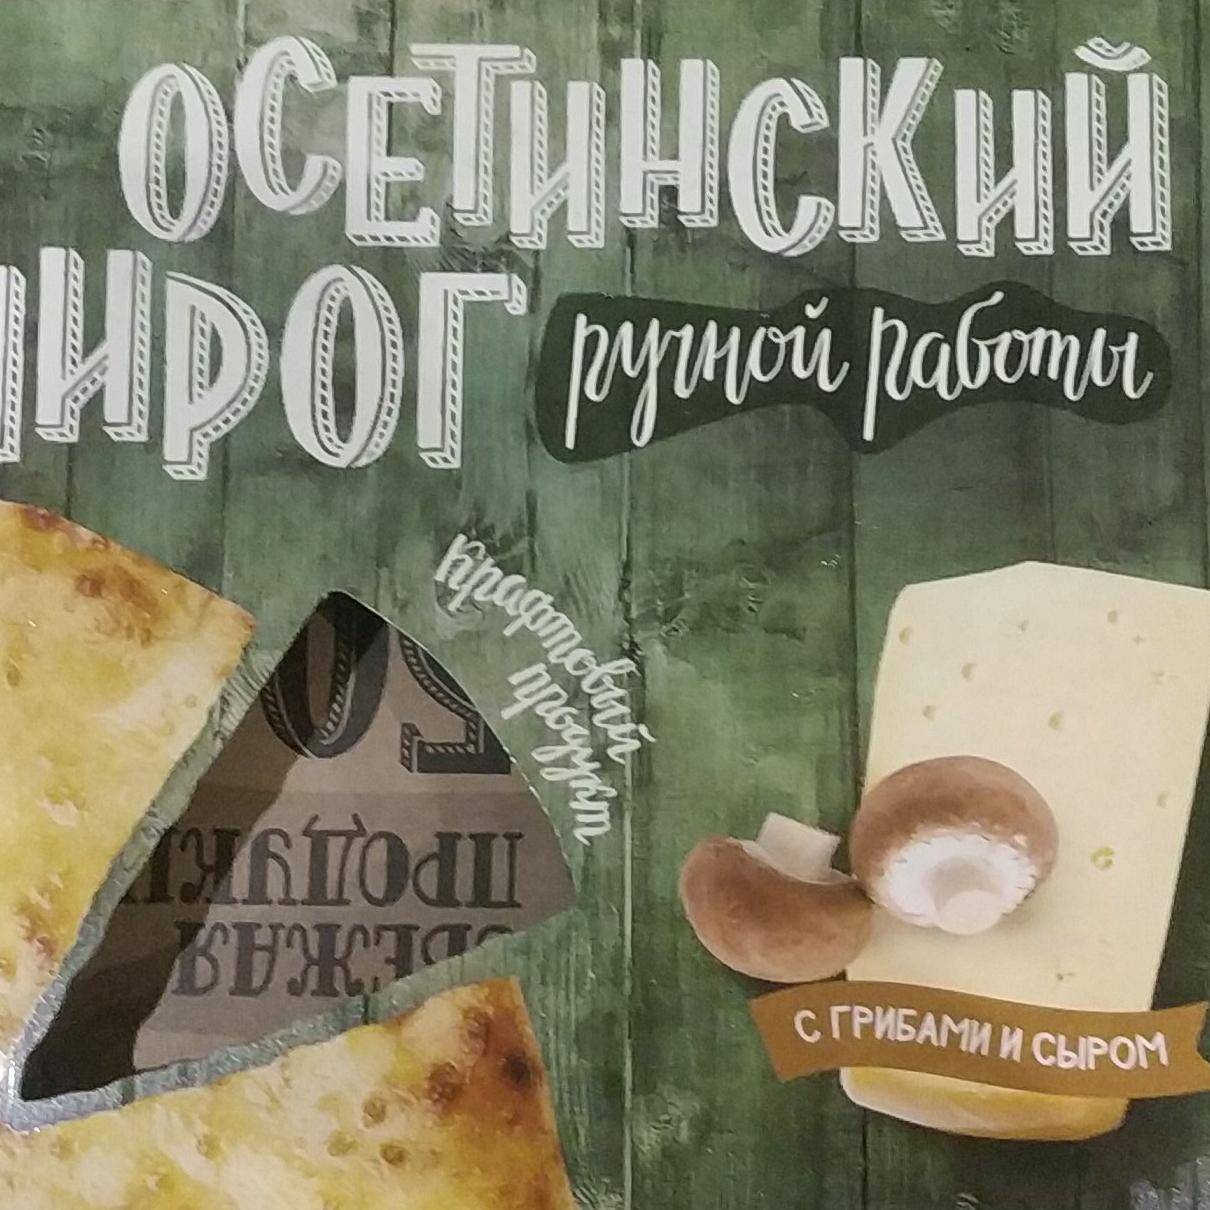 Фото - Пирог Осетинский с грибами и сыром У Палыча